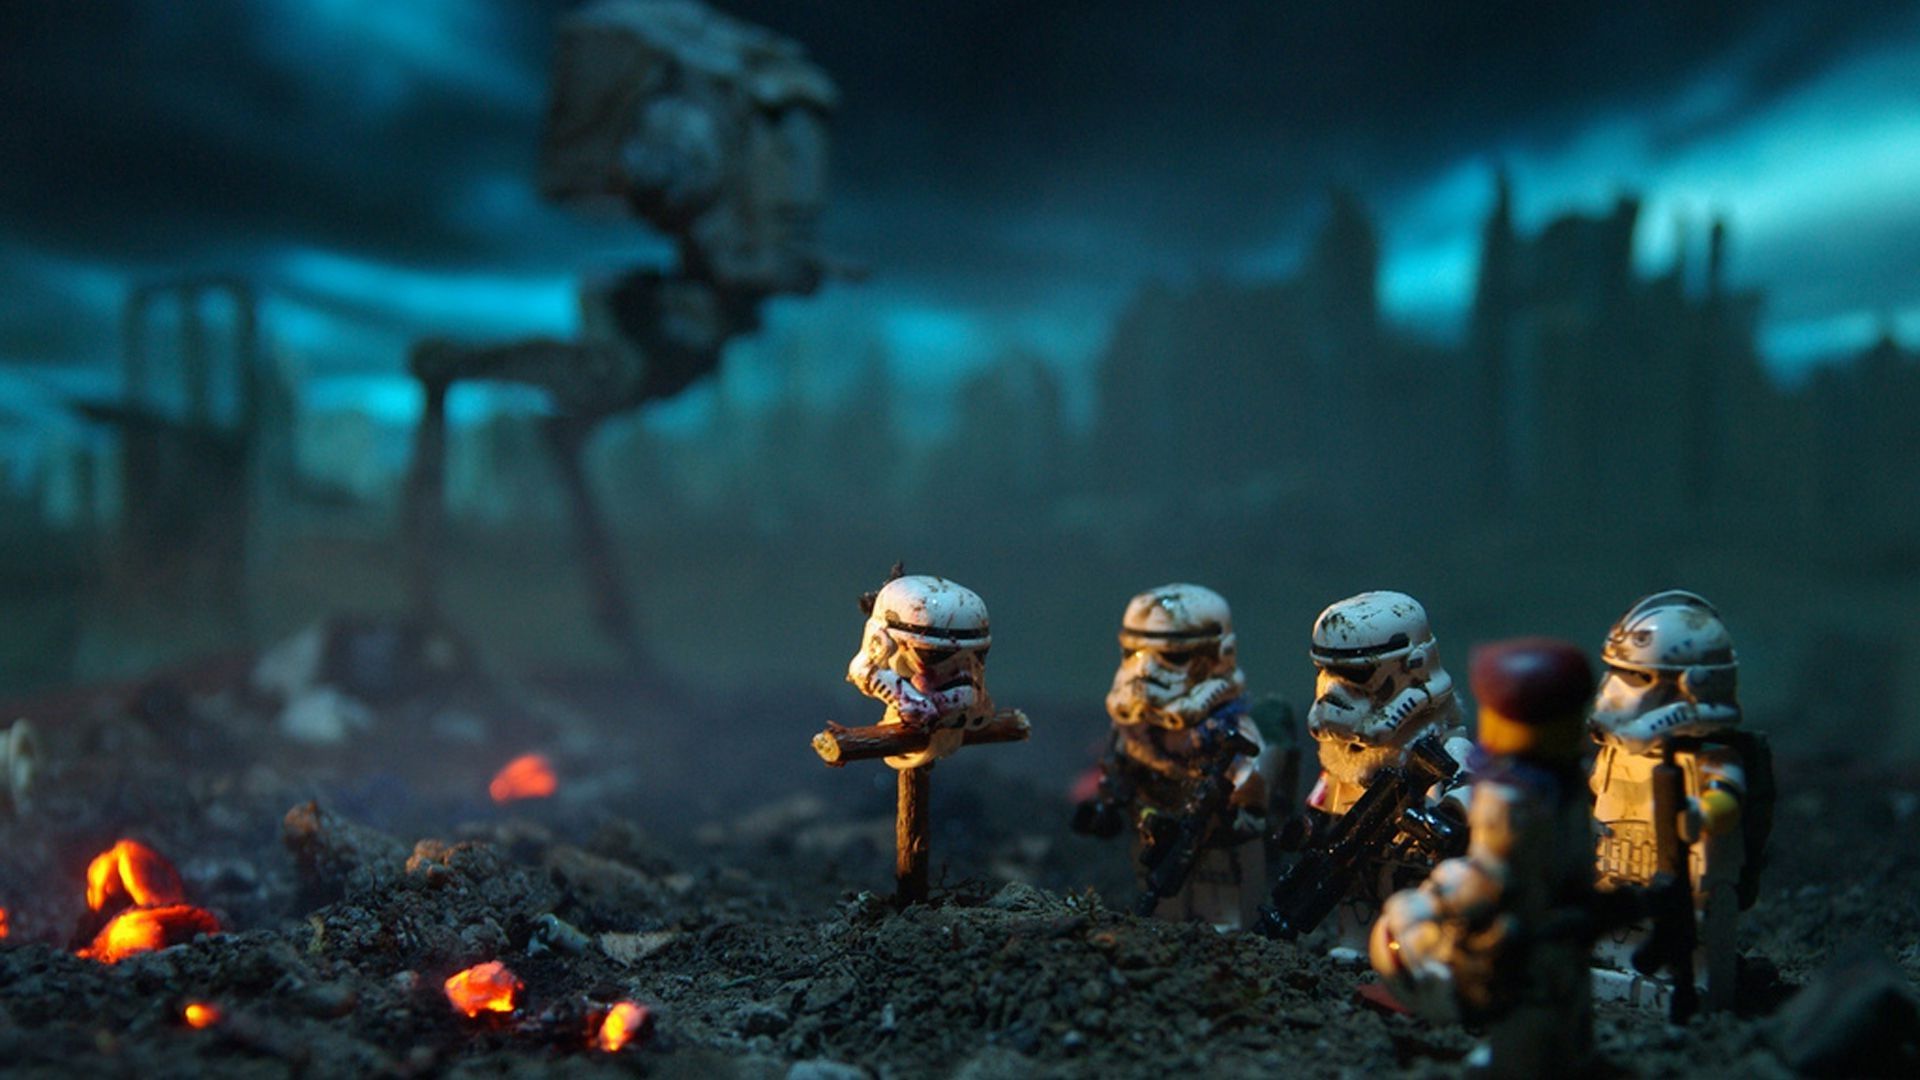 LEGO Star Wars Background. Star Wars